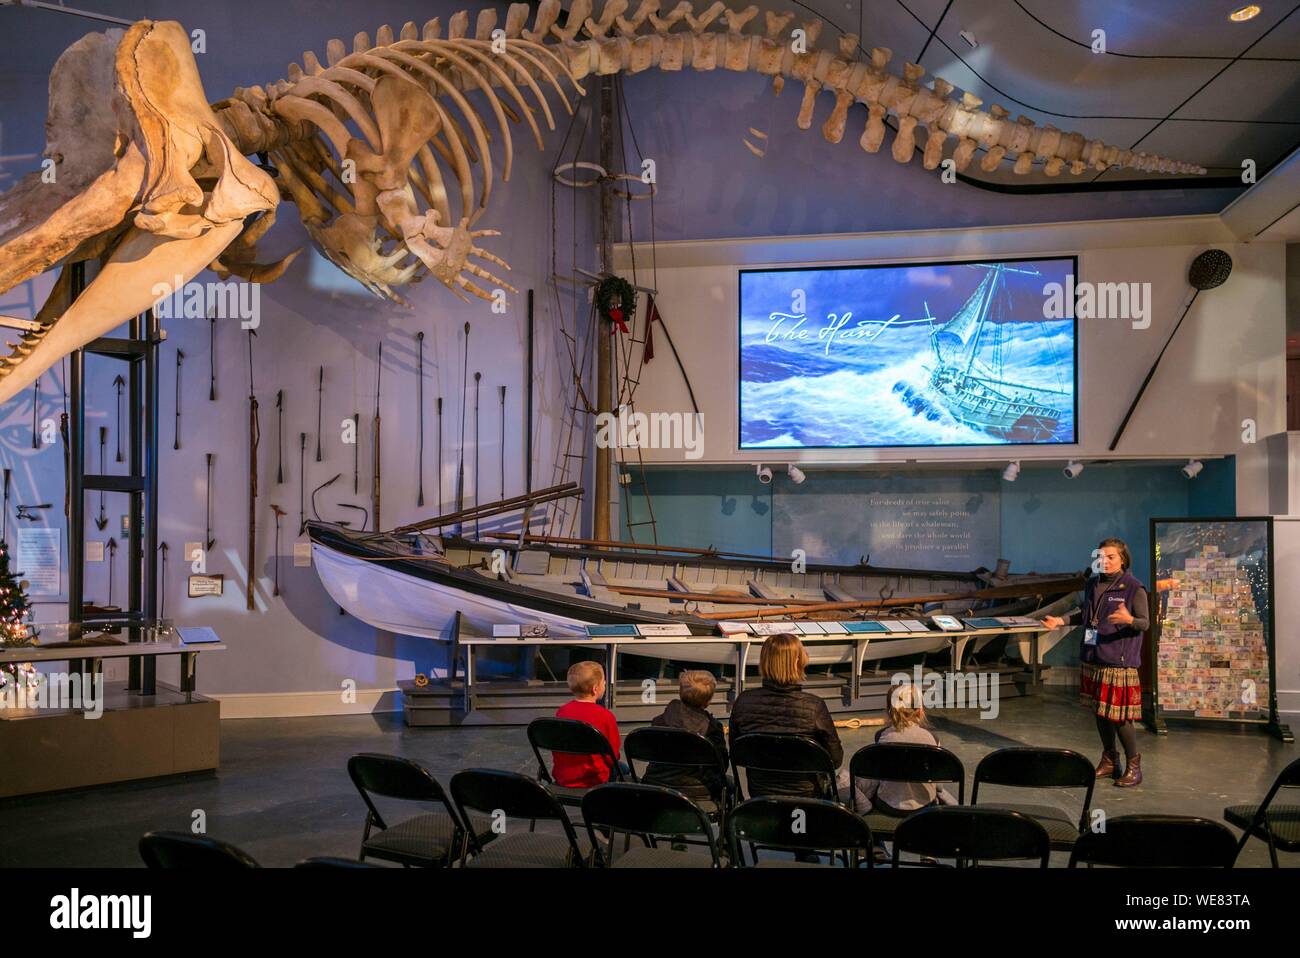 United States, New England, New Jersey, l'île de Nantucket, Nantucket, Nantucket Whaling Museum, squelette de baleine et présentation à la baleine Banque D'Images